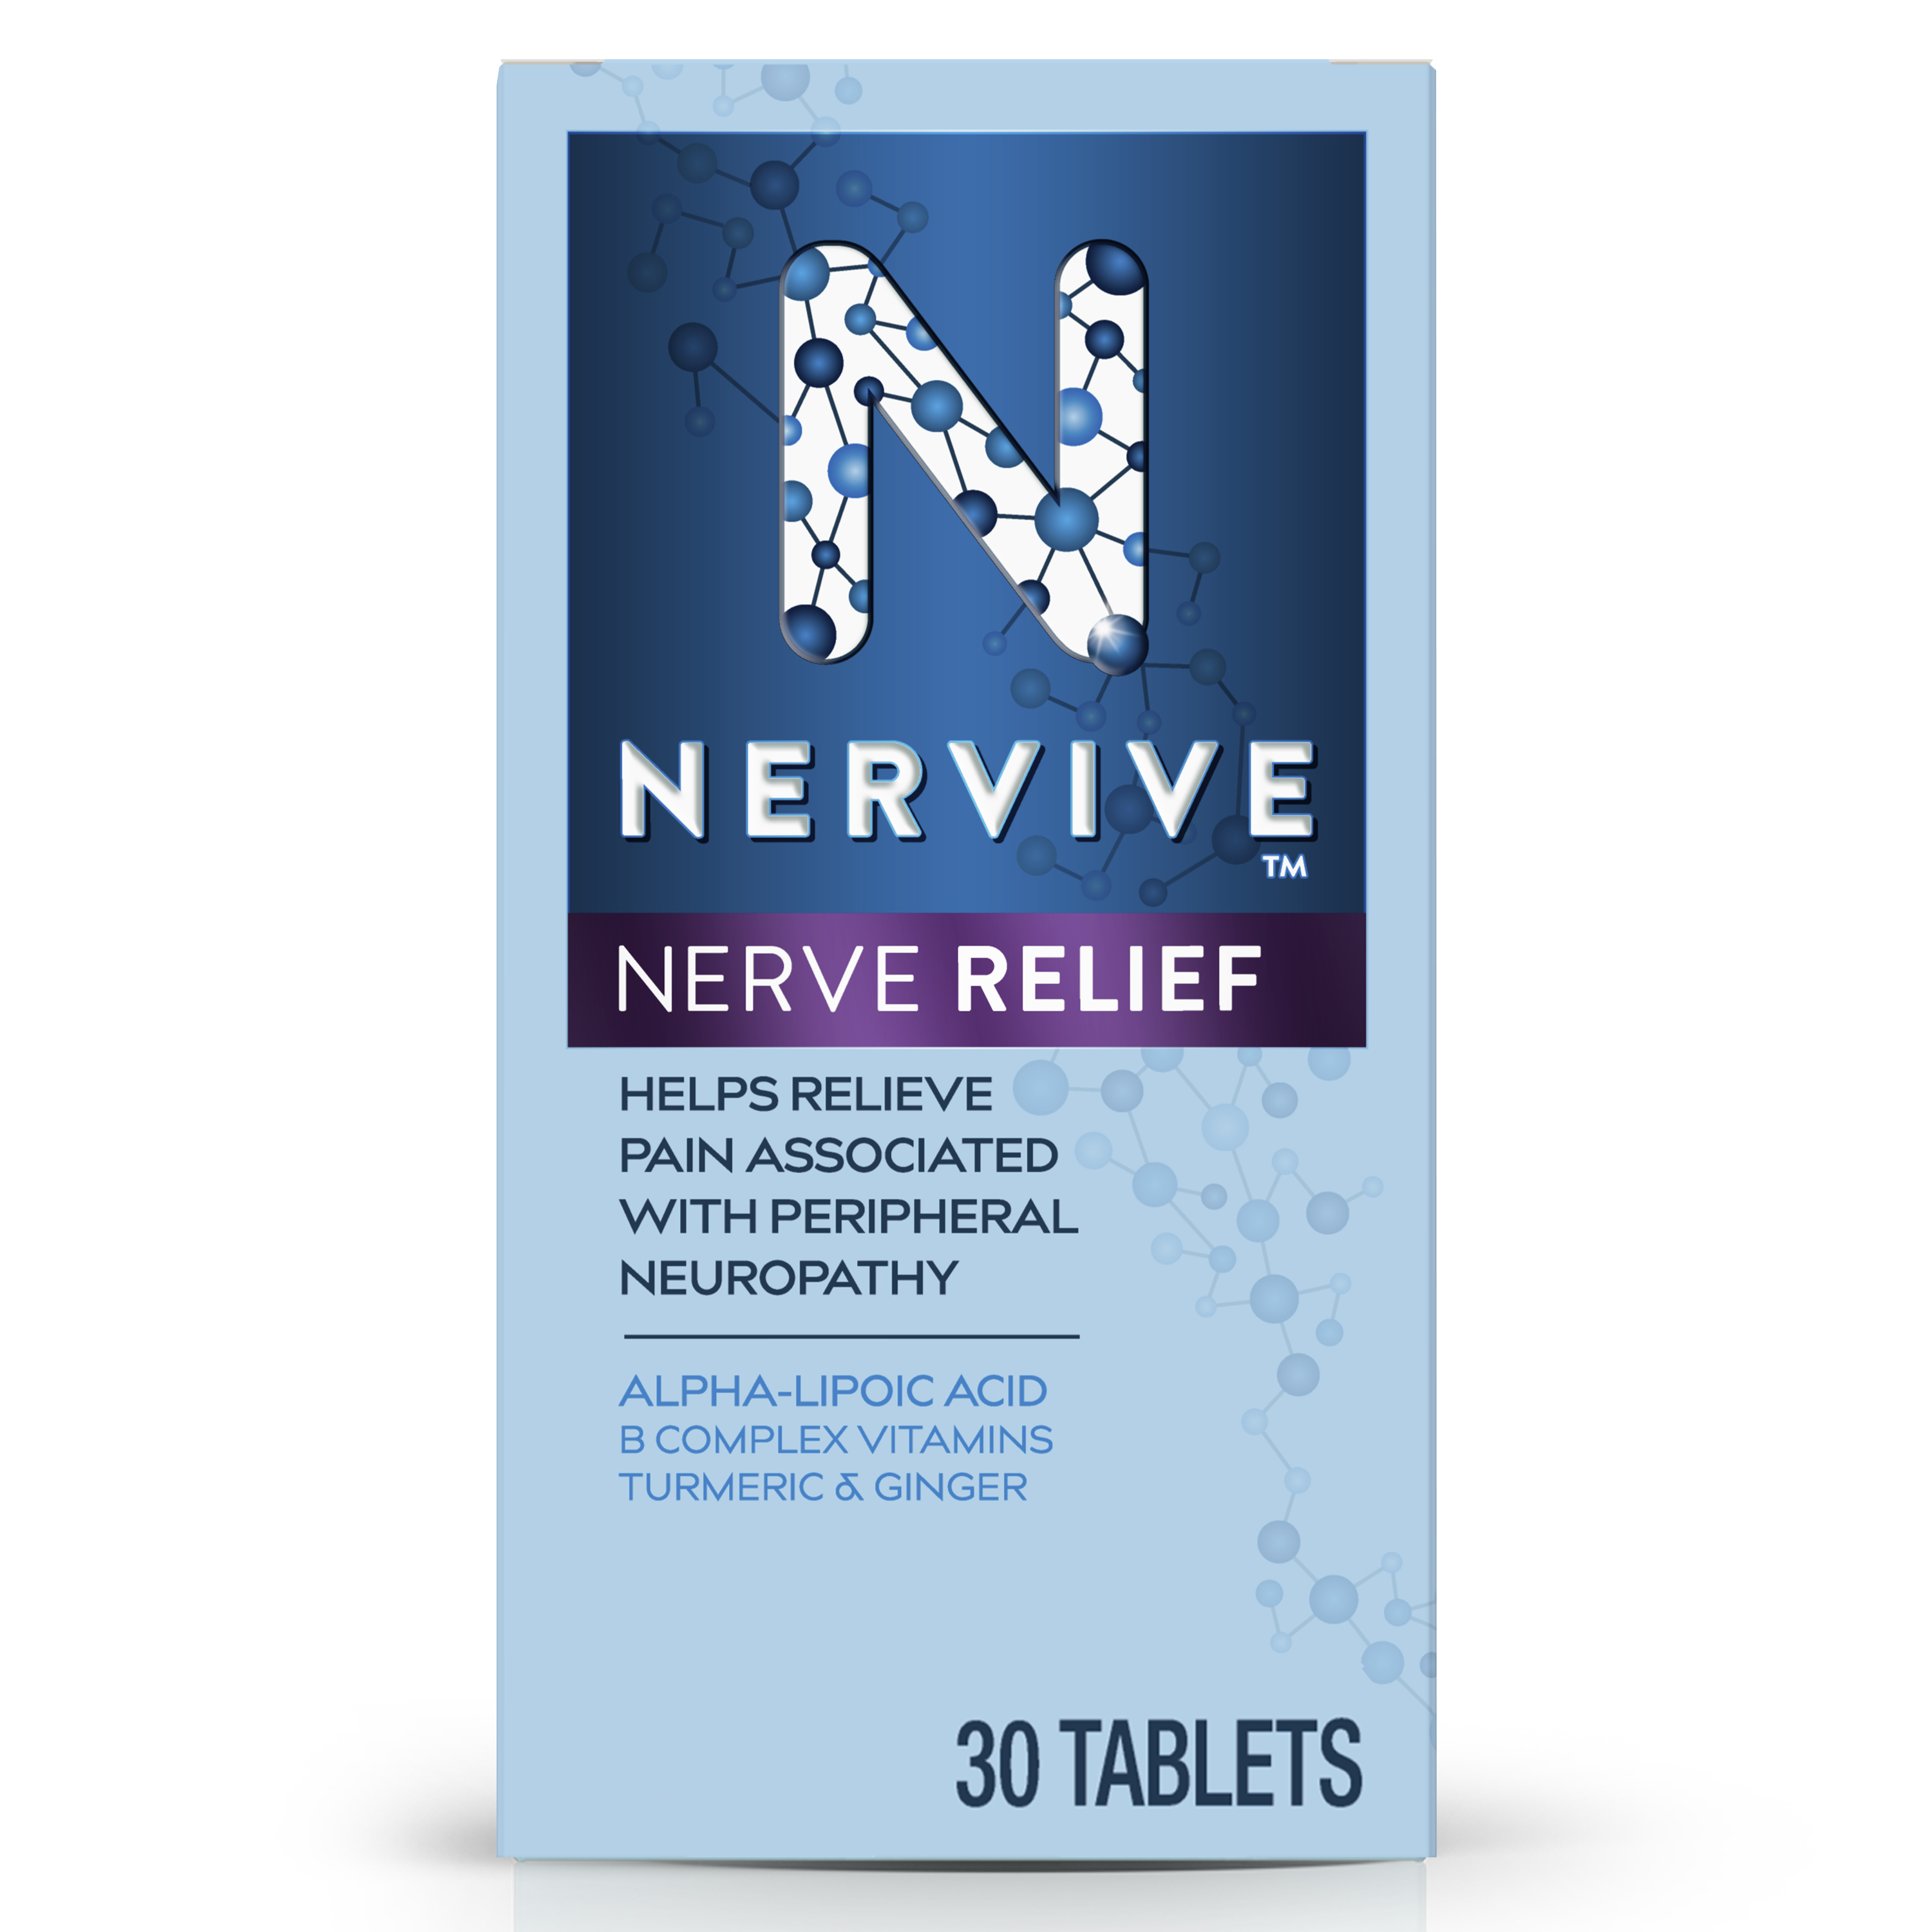 Nervive Nerve Relief Left View